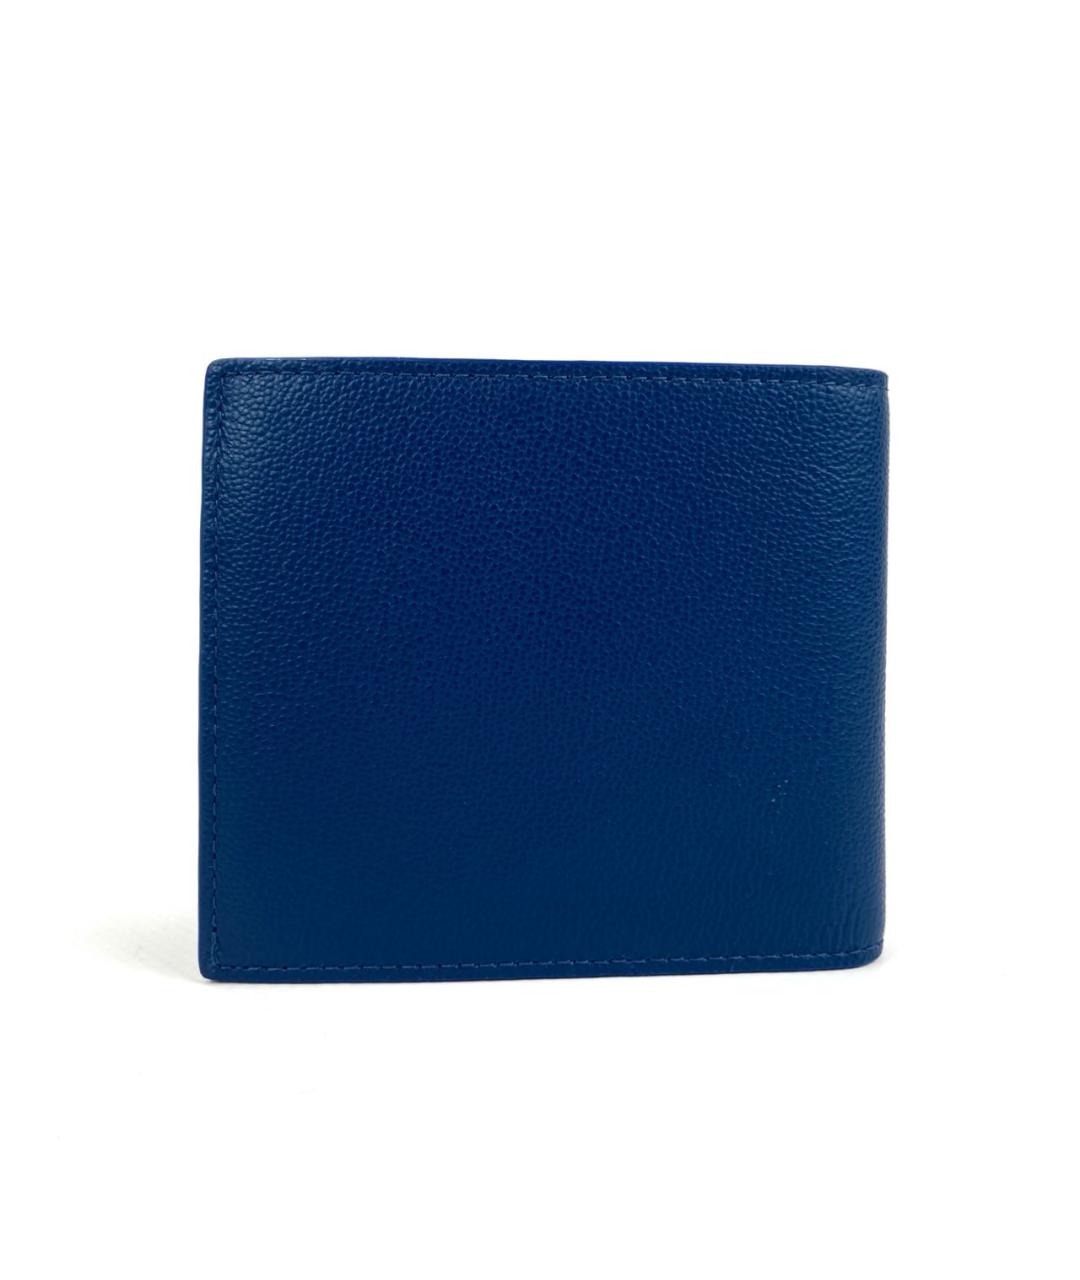 BURBERRY Синий кожаный кошелек, фото 2